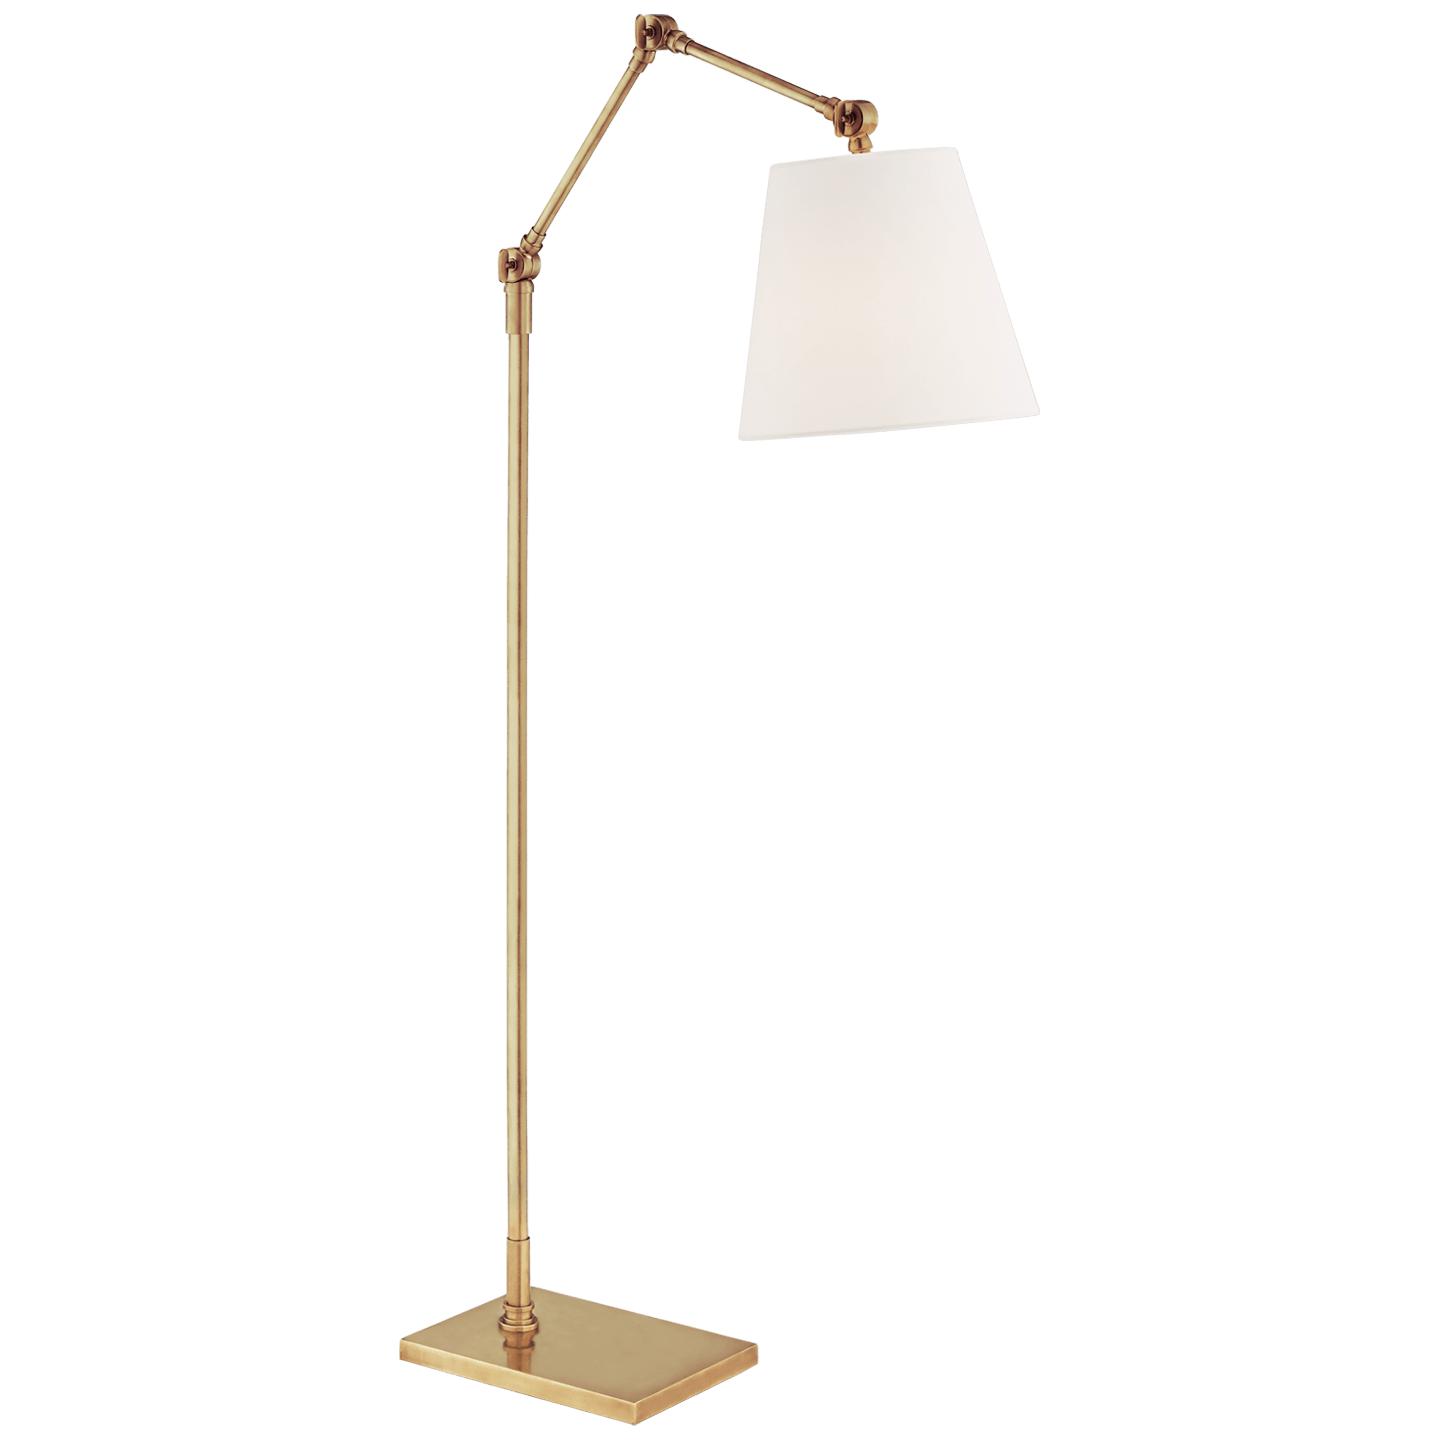 Купить Торшер Graves Articulating Floor Lamp в интернет-магазине roooms.ru